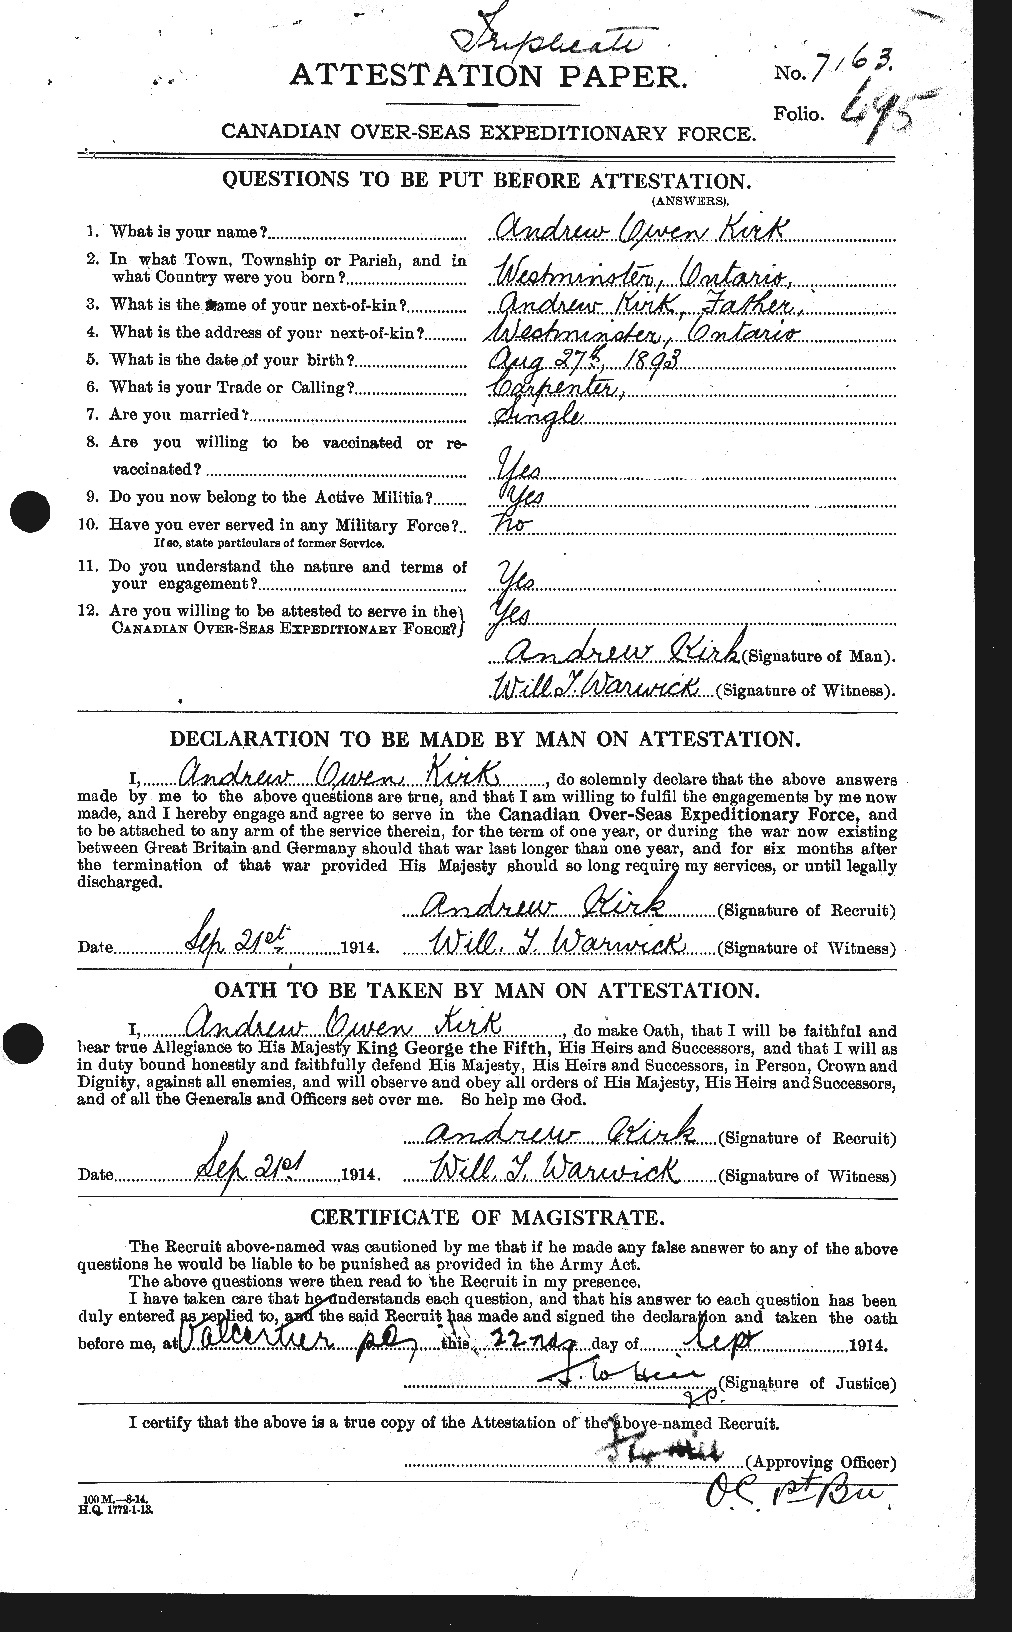 Dossiers du Personnel de la Première Guerre mondiale - CEC 437347a